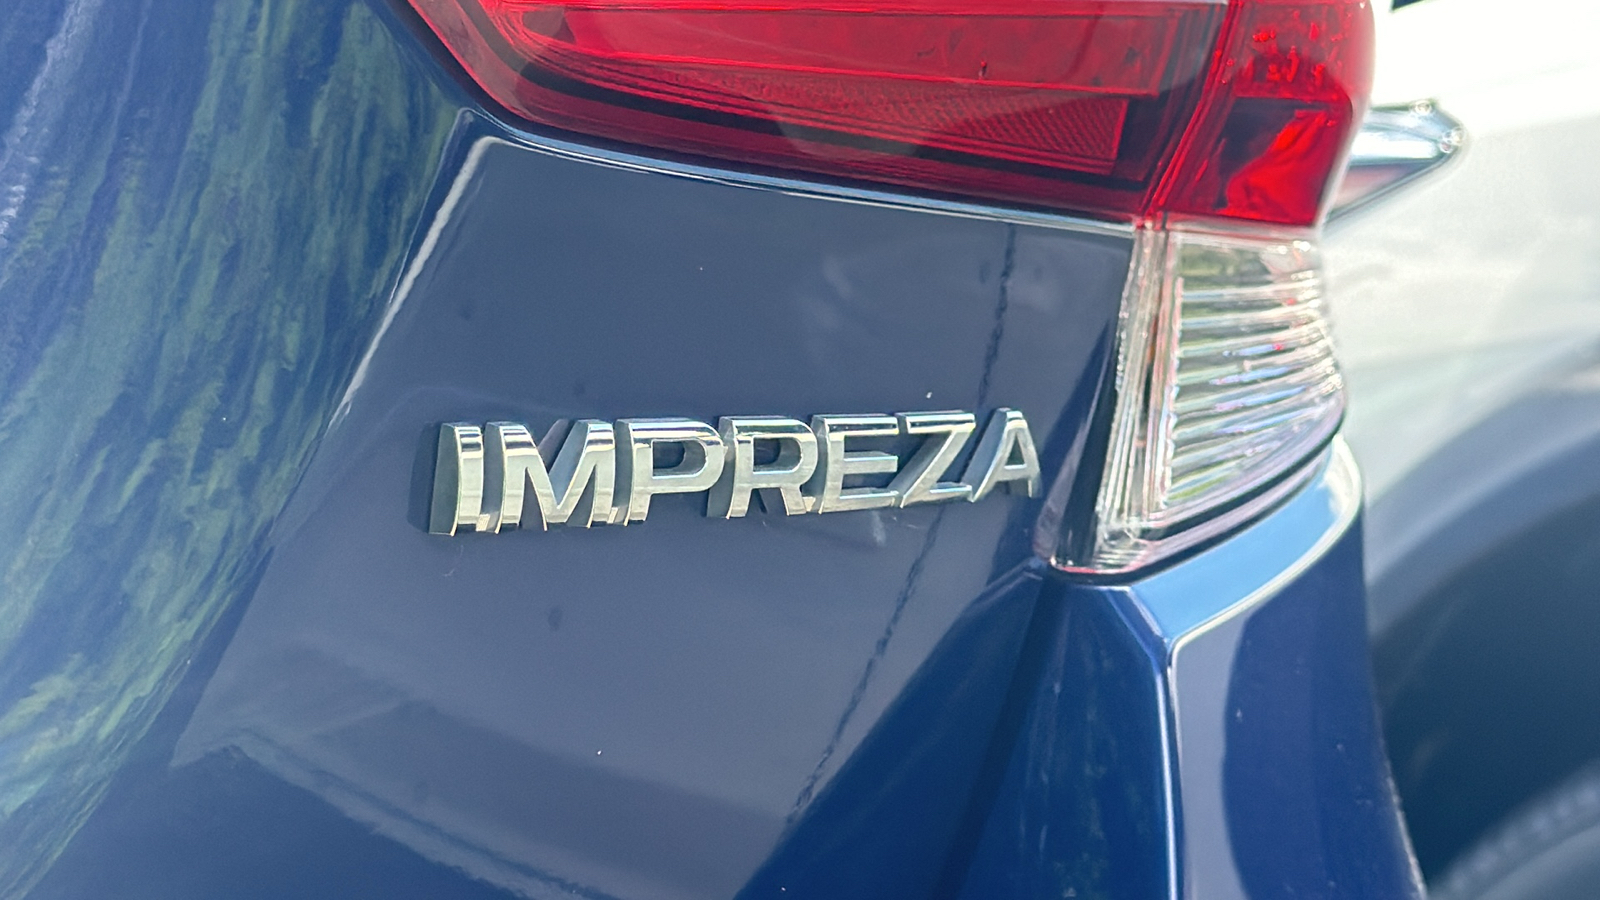 2022 Subaru Impreza Base Trim Level 22